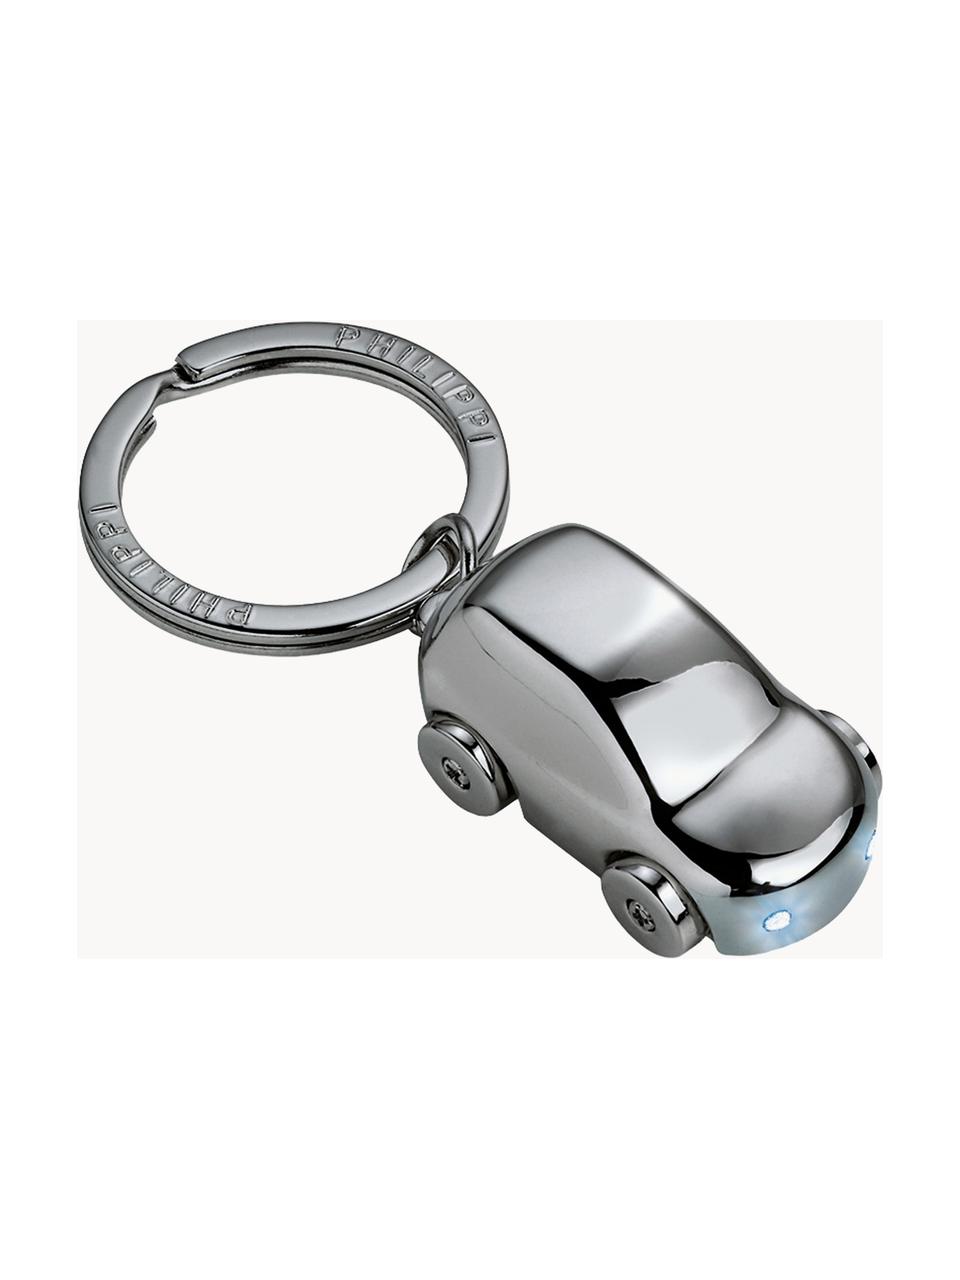 Metall-Schlüsselanhänger Cruiser, Metall, beschichtet, Silberfarben, B 8 x H 2 cm